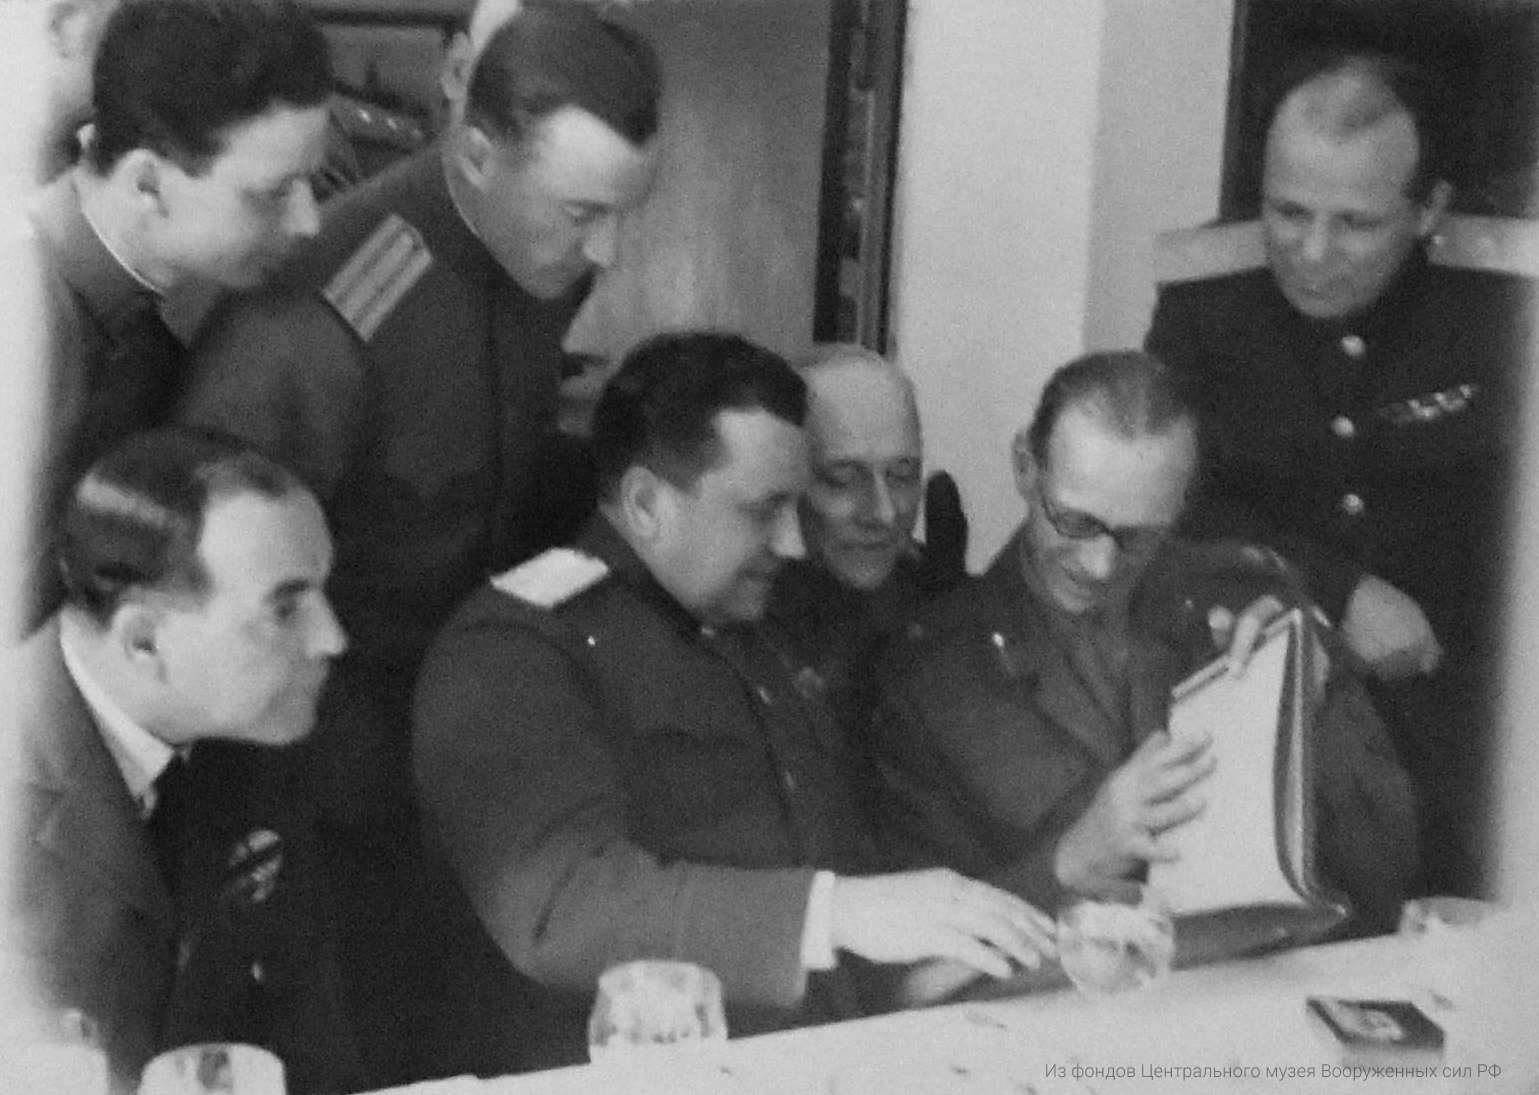 Командарм Гришин, генерал-лейтенант Сычев и генерал Дэмпсэй рассматривают альбом снимков дружеских встреч с союзниками, подарок командования 49 армии